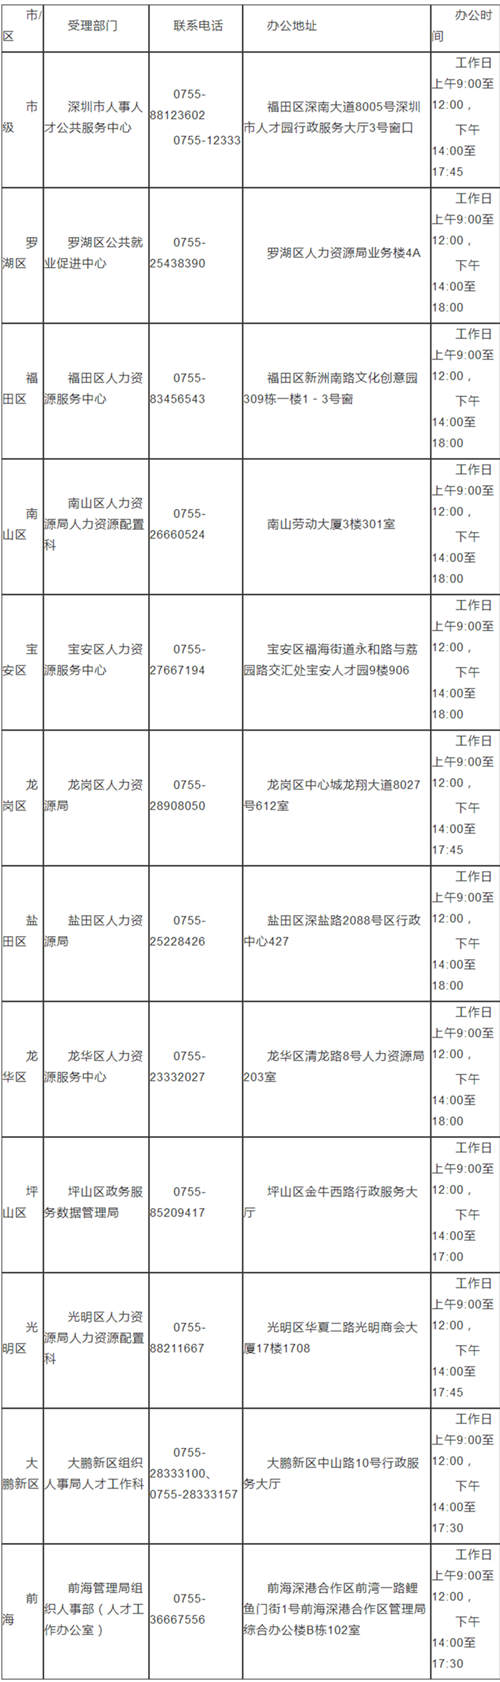 2020深圳新引进人才租房及生活补贴标准